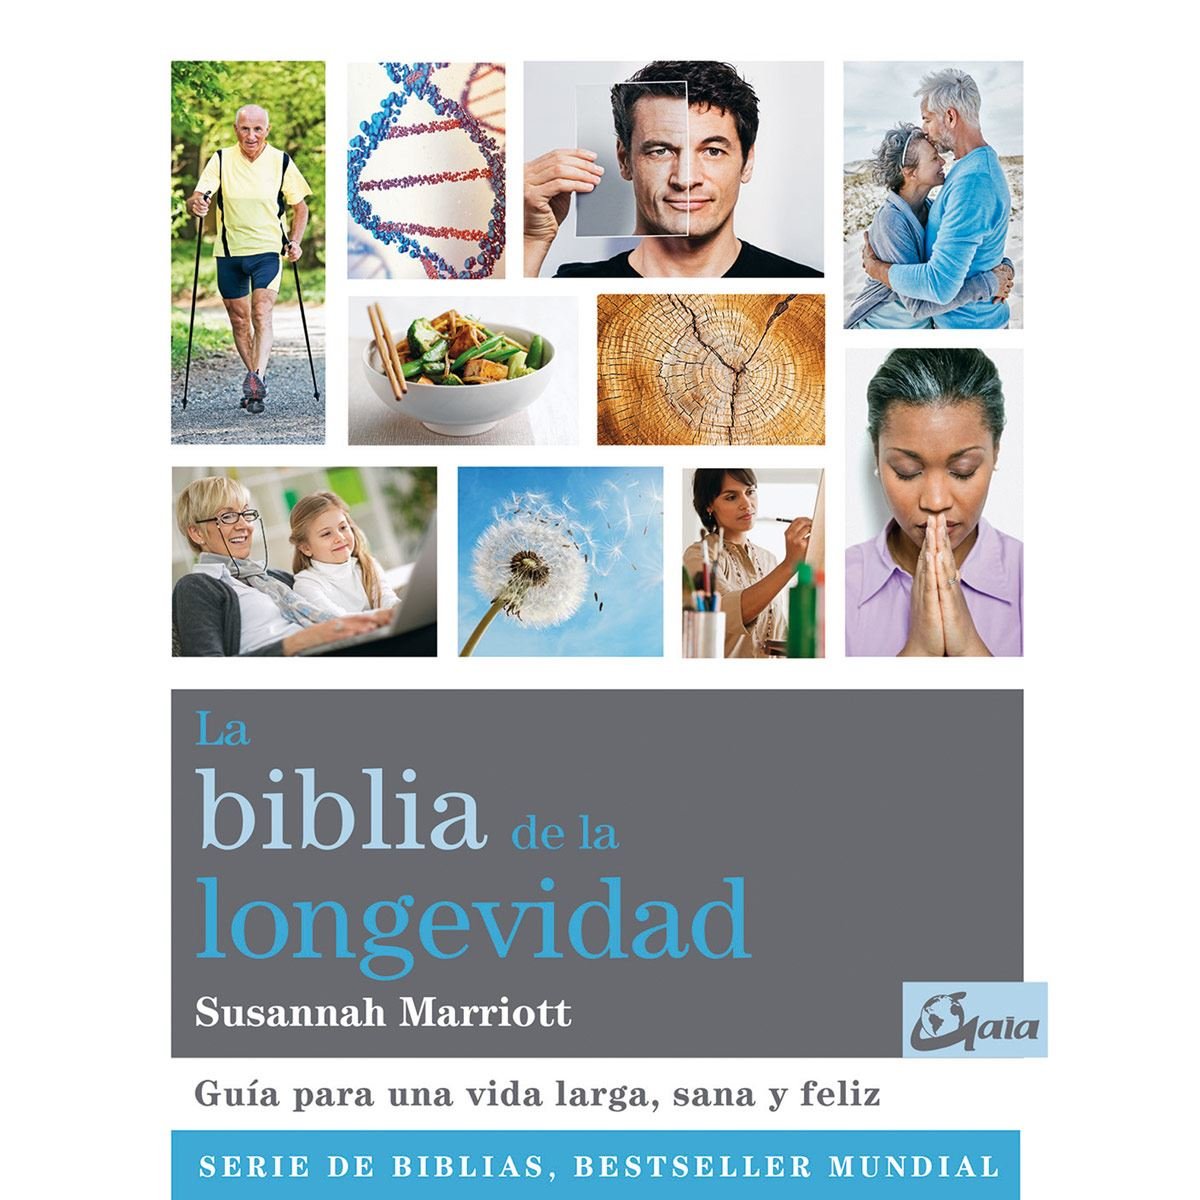 La biblia de la longevidad. Guía para una vida larga, sana y feliz